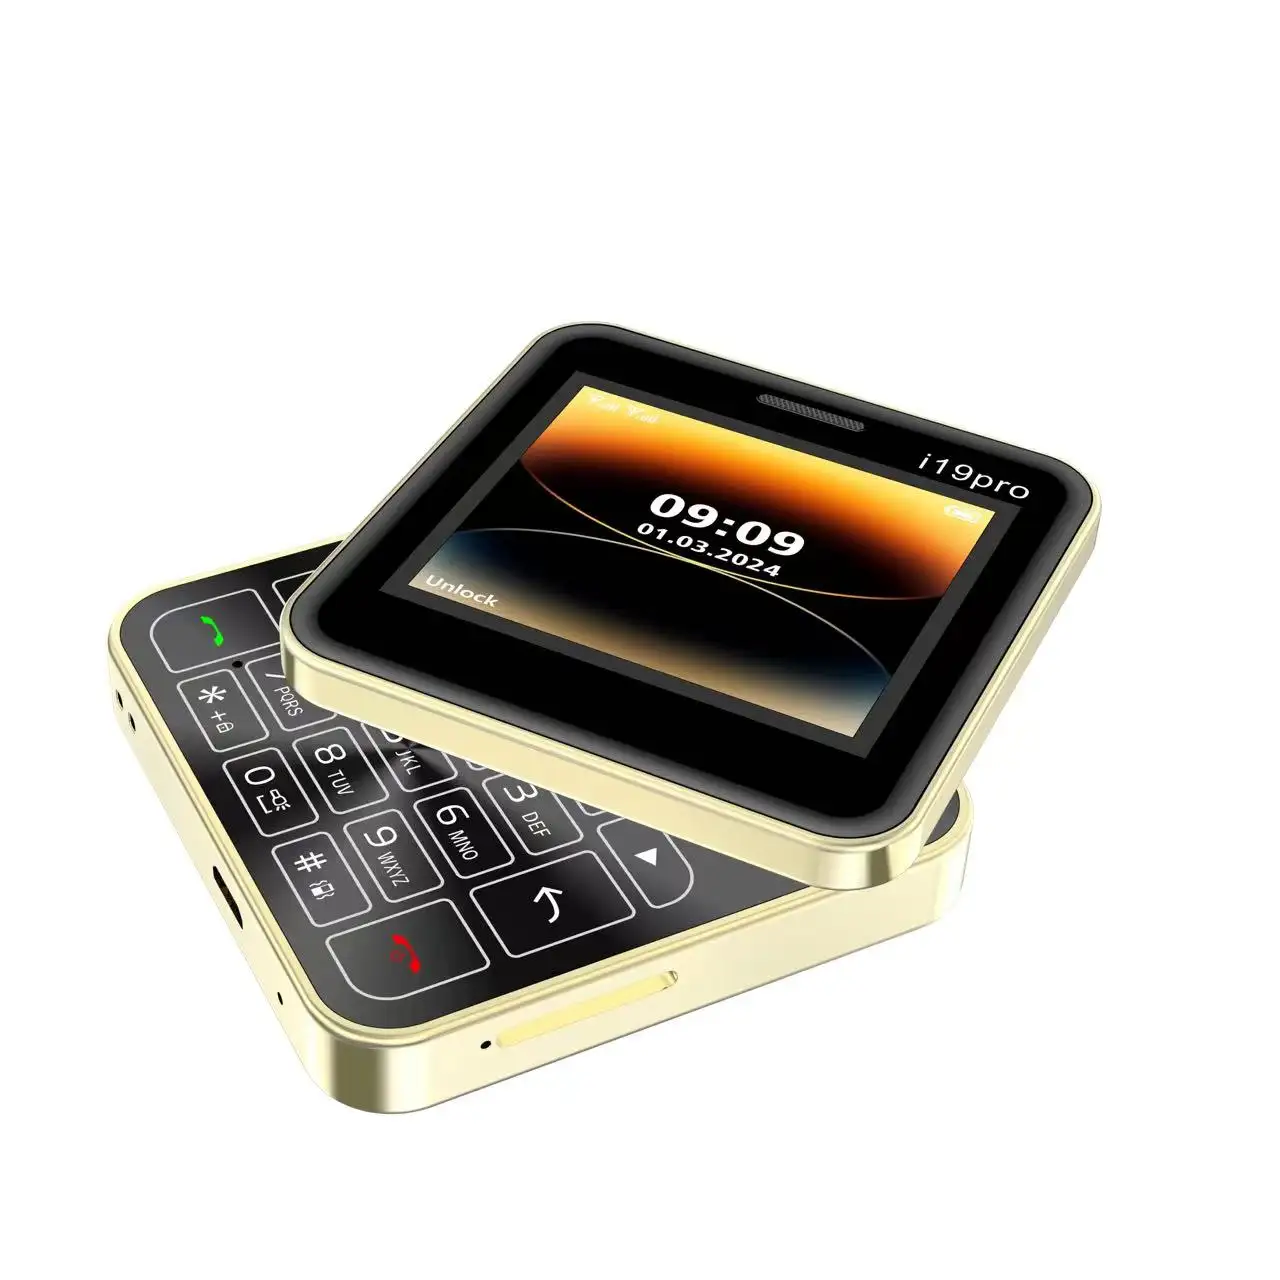 O novo telefone i19 Pro de 2.4 polegadas com bateria embutida de 1400mAh para celular Sim GSM duplo, design clássico antigo, deslizante, da China